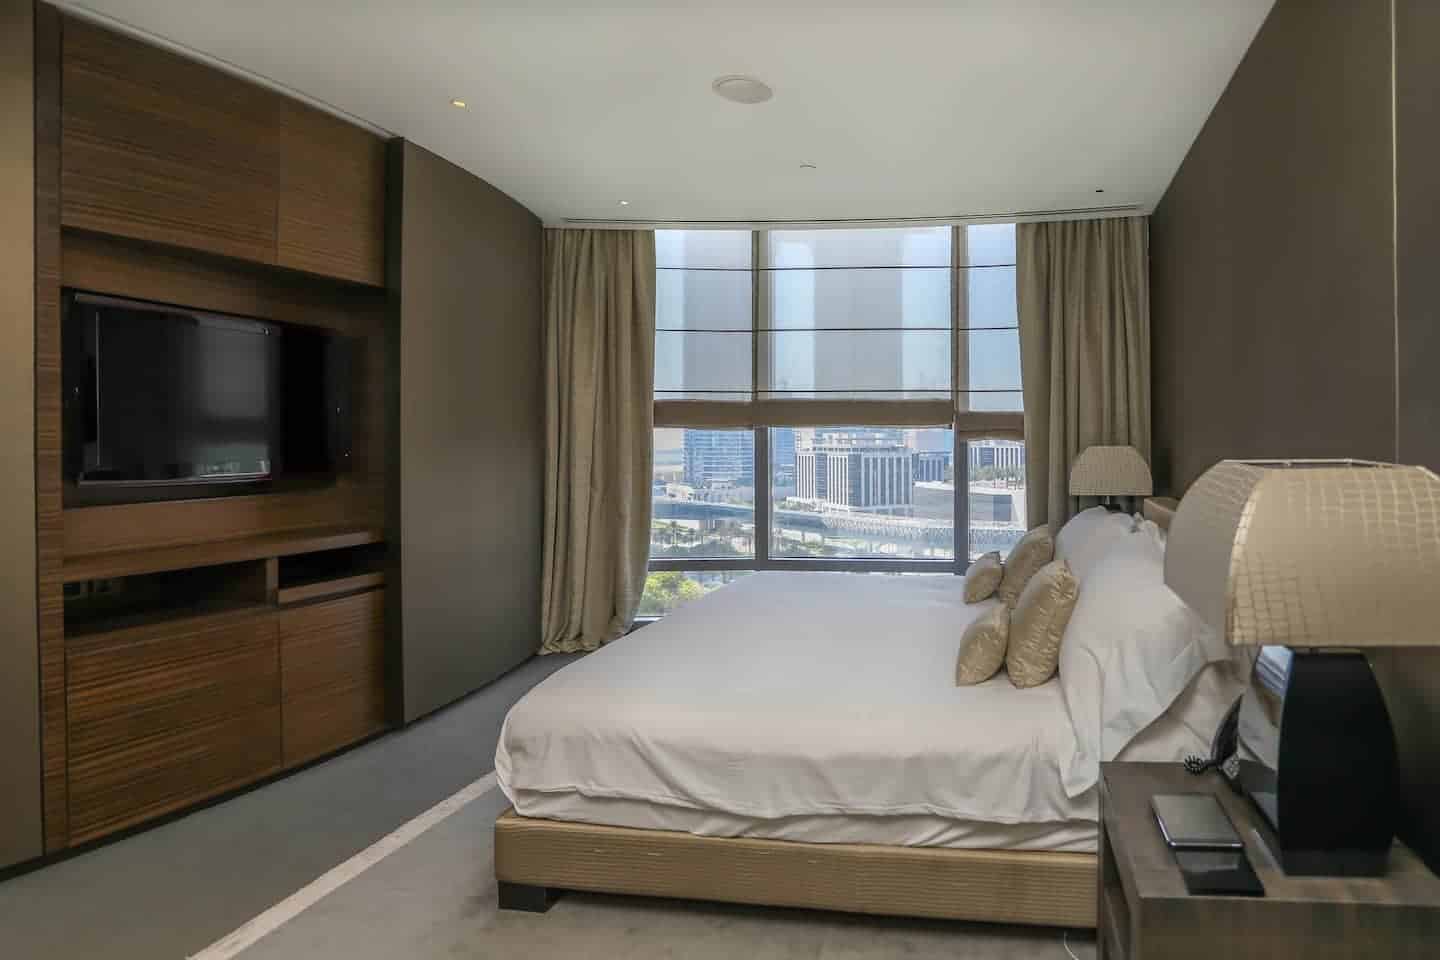 Image of Airbnb rental in Dubai, United Arab Emirates